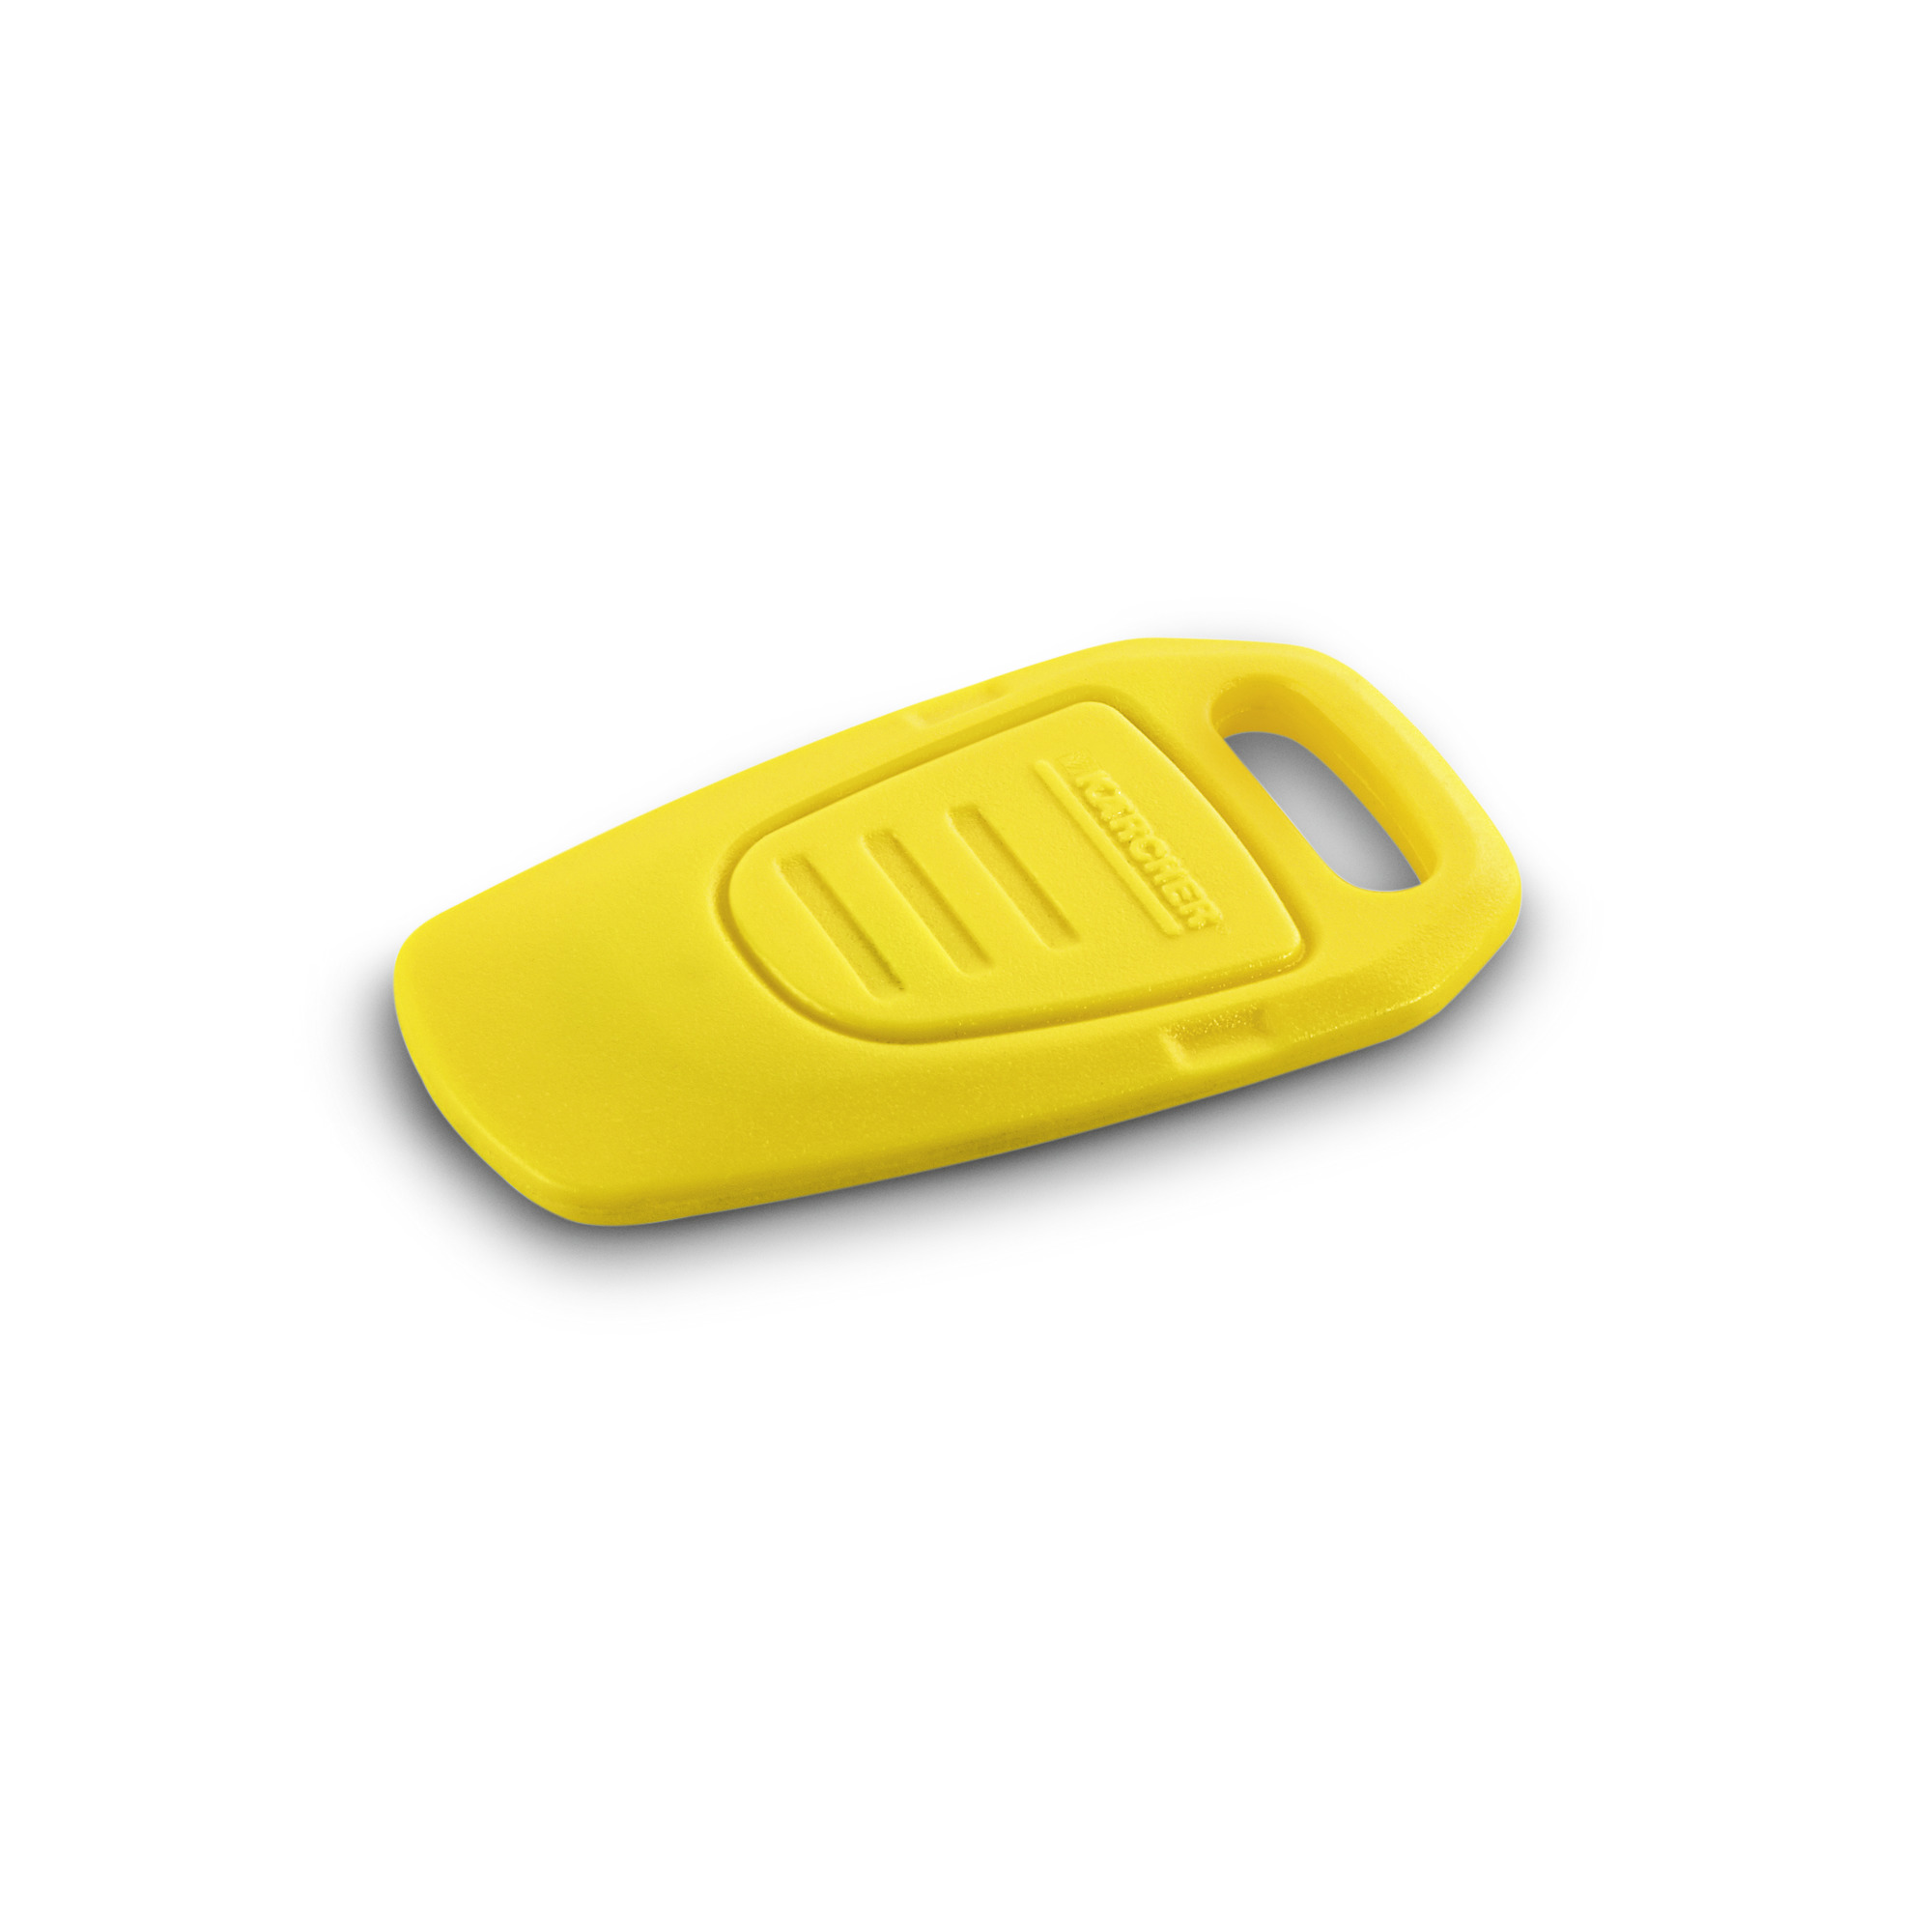 Kärcher KIK-Schlüssel, gelb